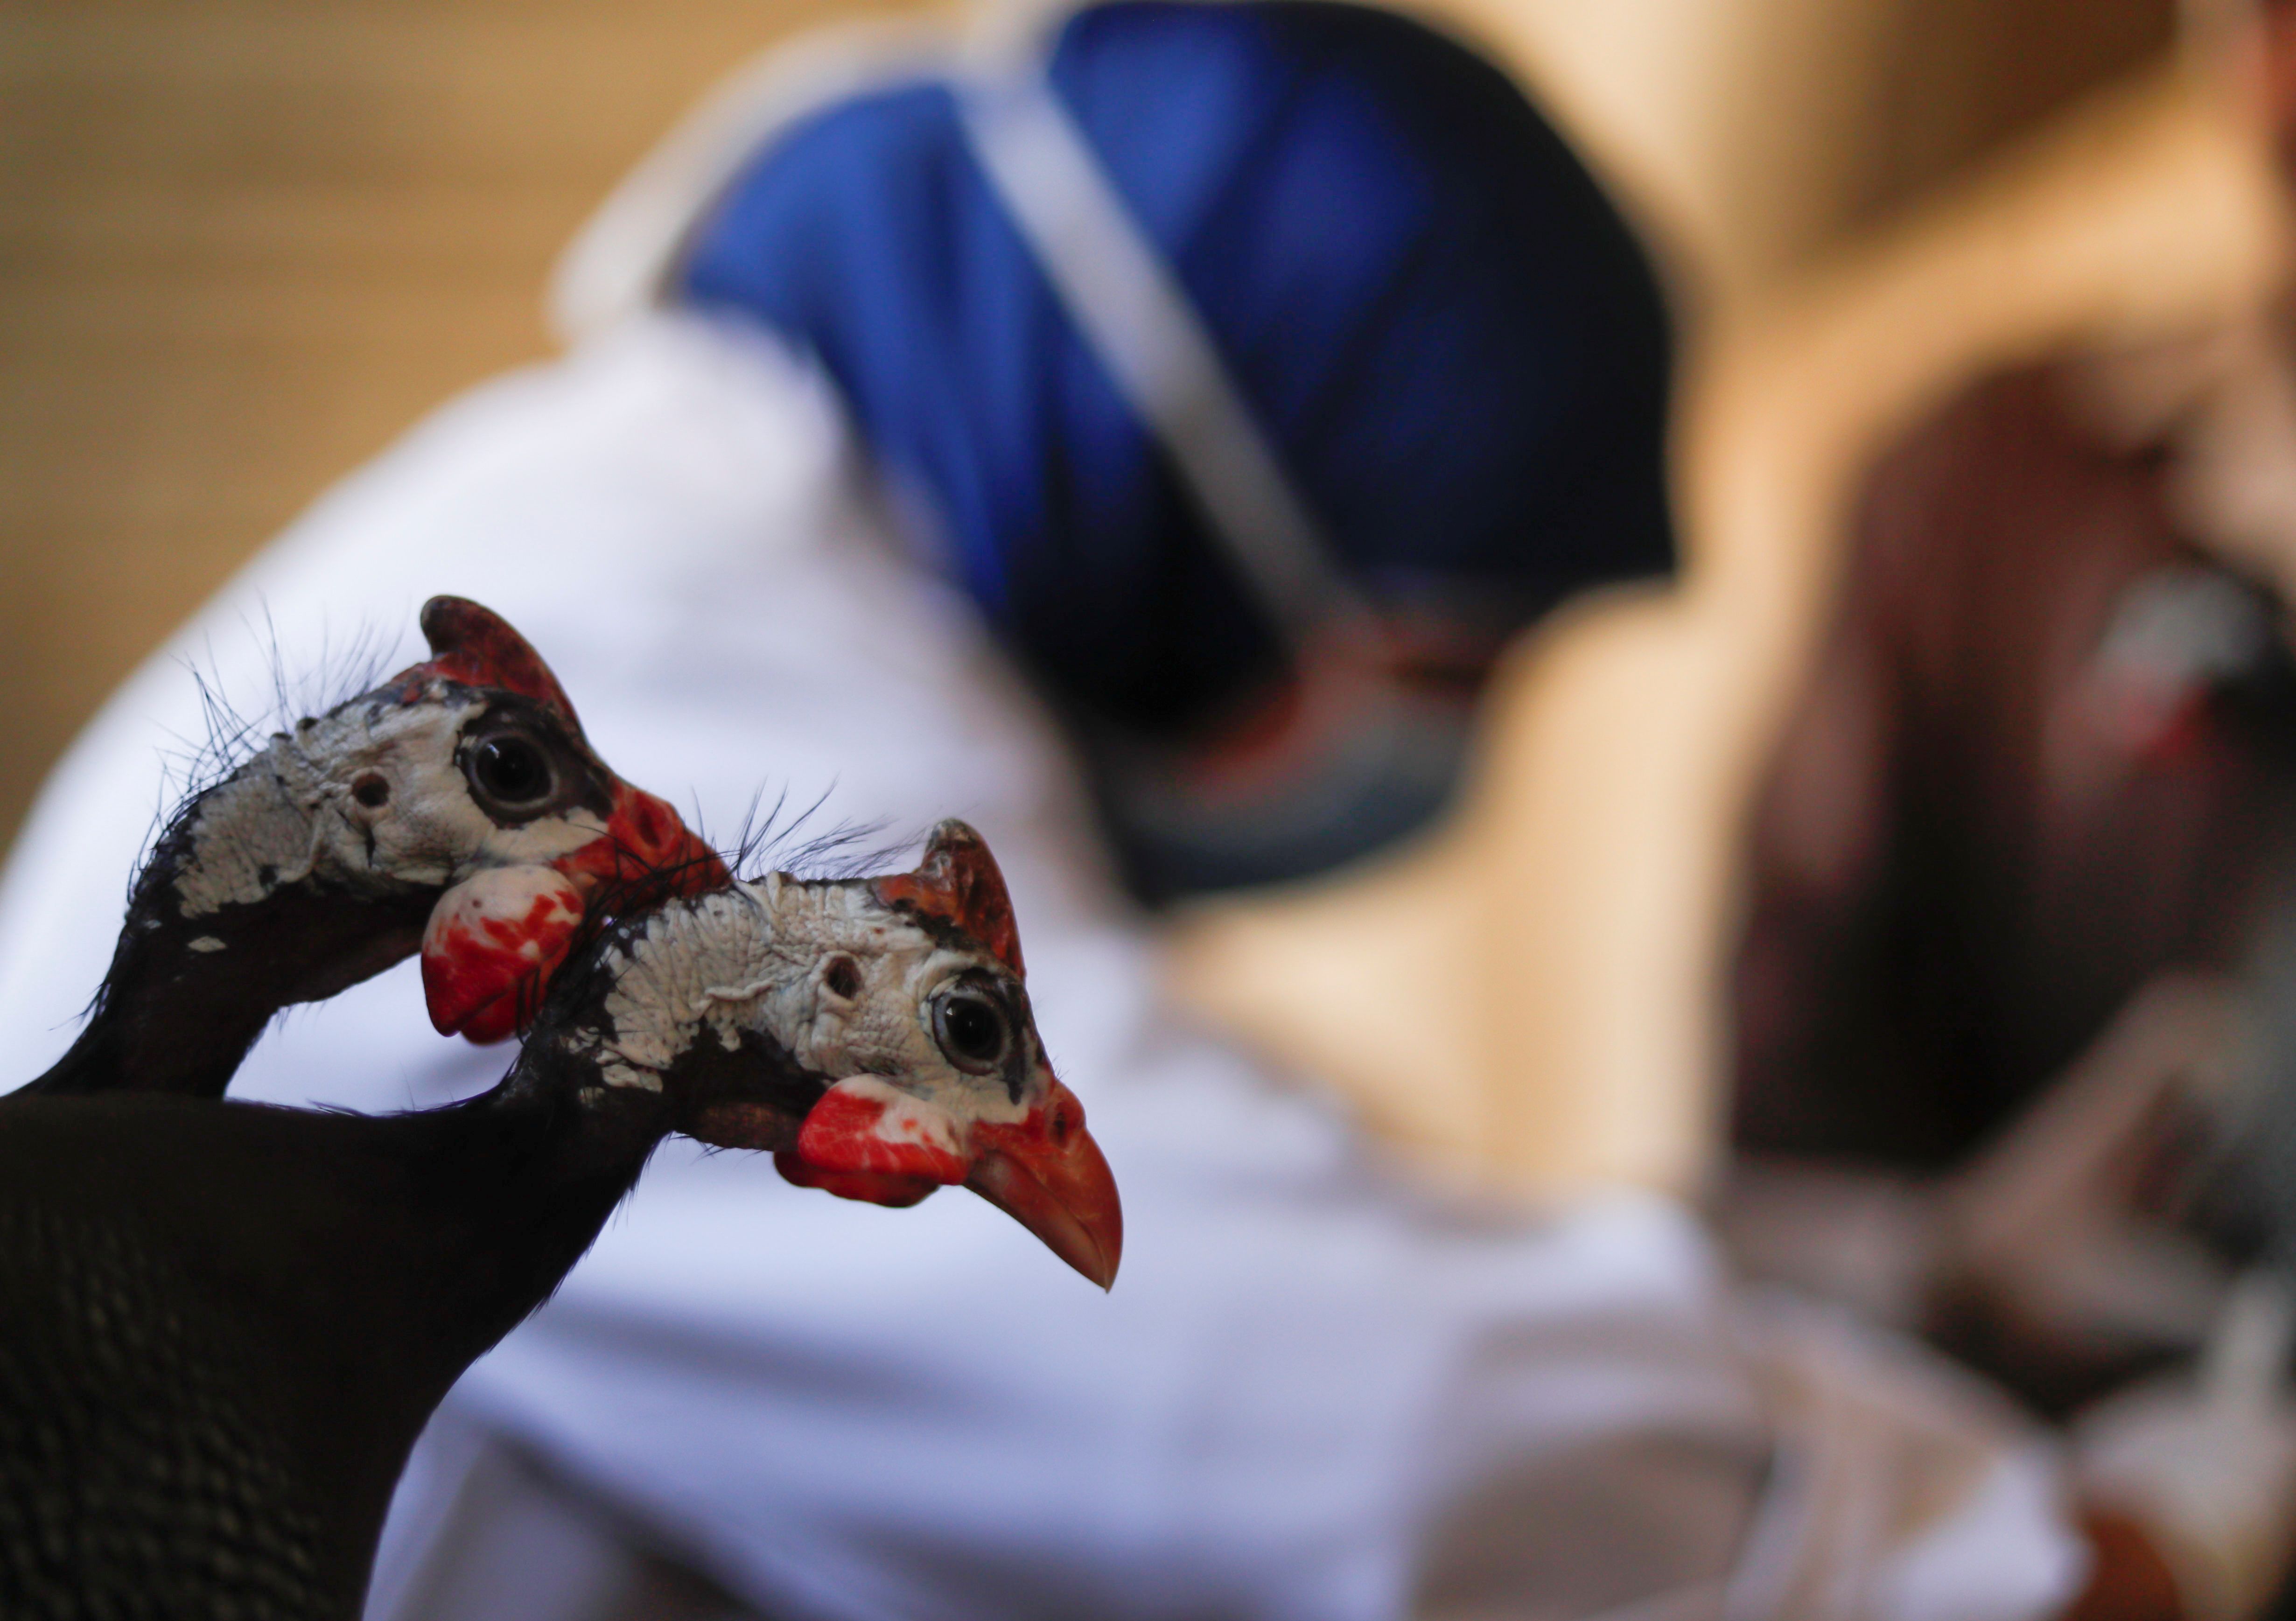 Gripe aviar: cuál es el riesgo de infección para los seres humanos, según los expertos